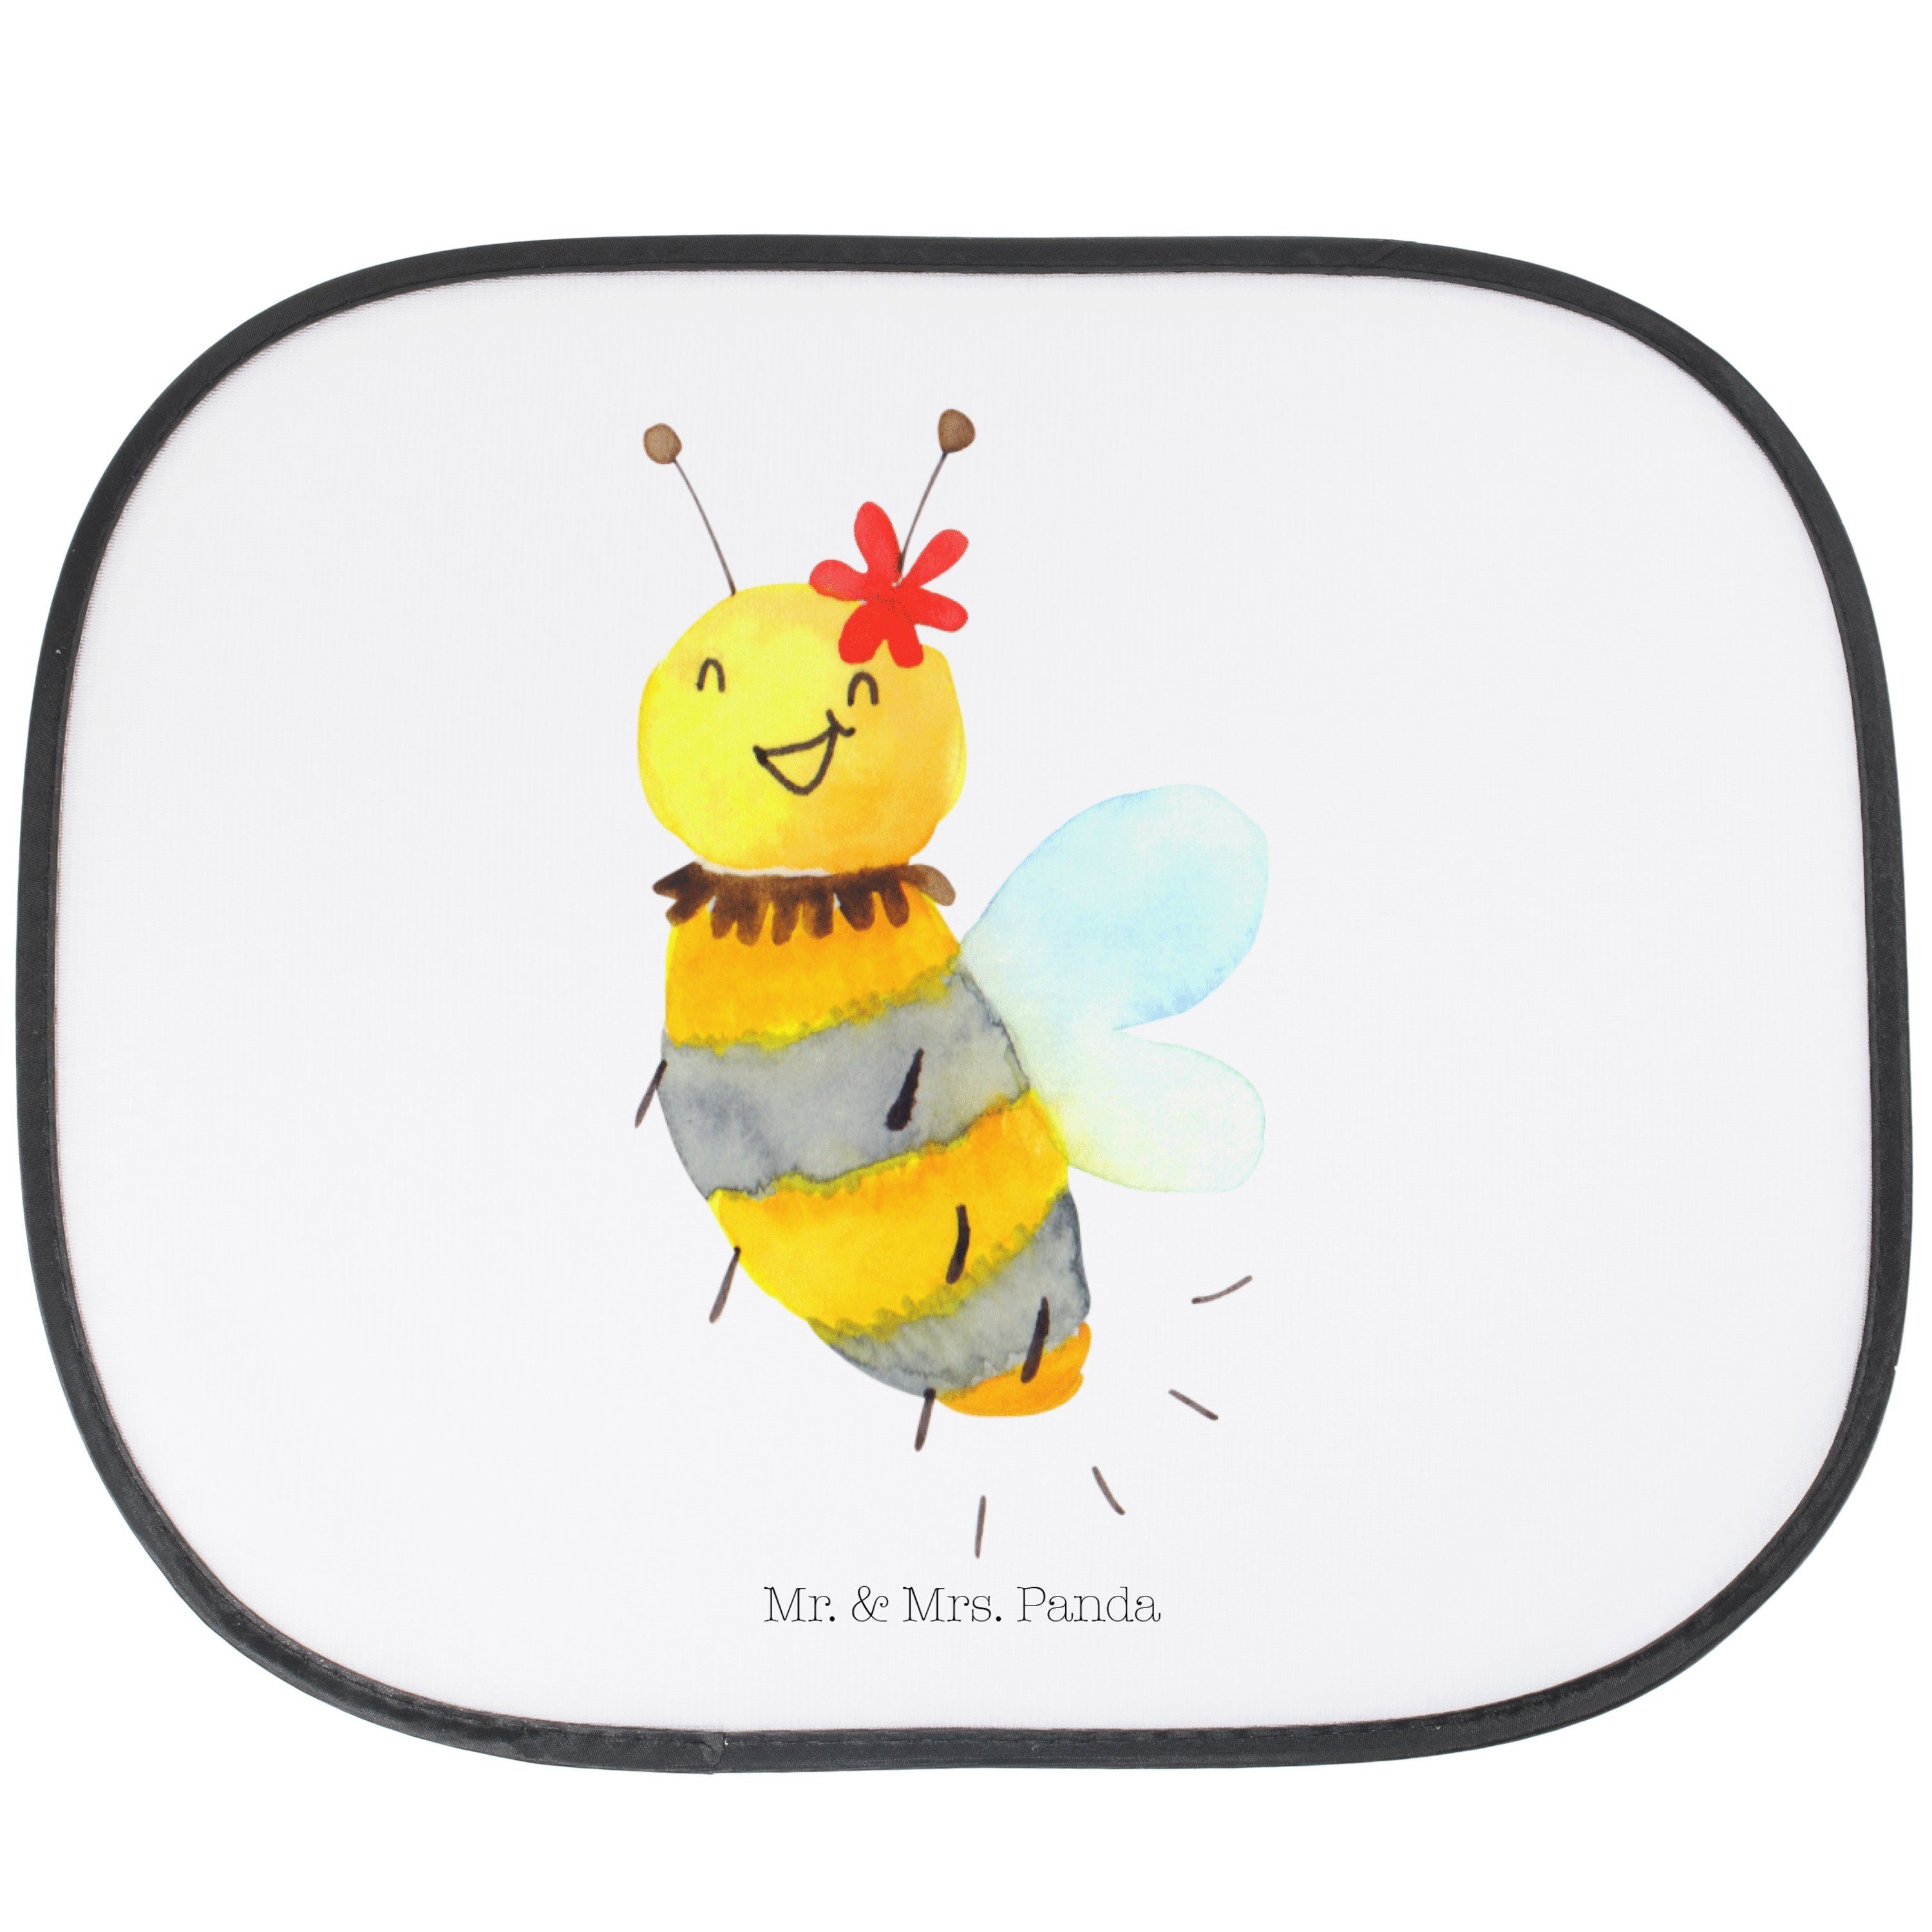 Sonnenschutz Biene Blume - Weiß - Geschenk, Sonne Auto, Auto Sonnenschutz, Sonnenb, Mr. & Mrs. Panda, Seidenmatt